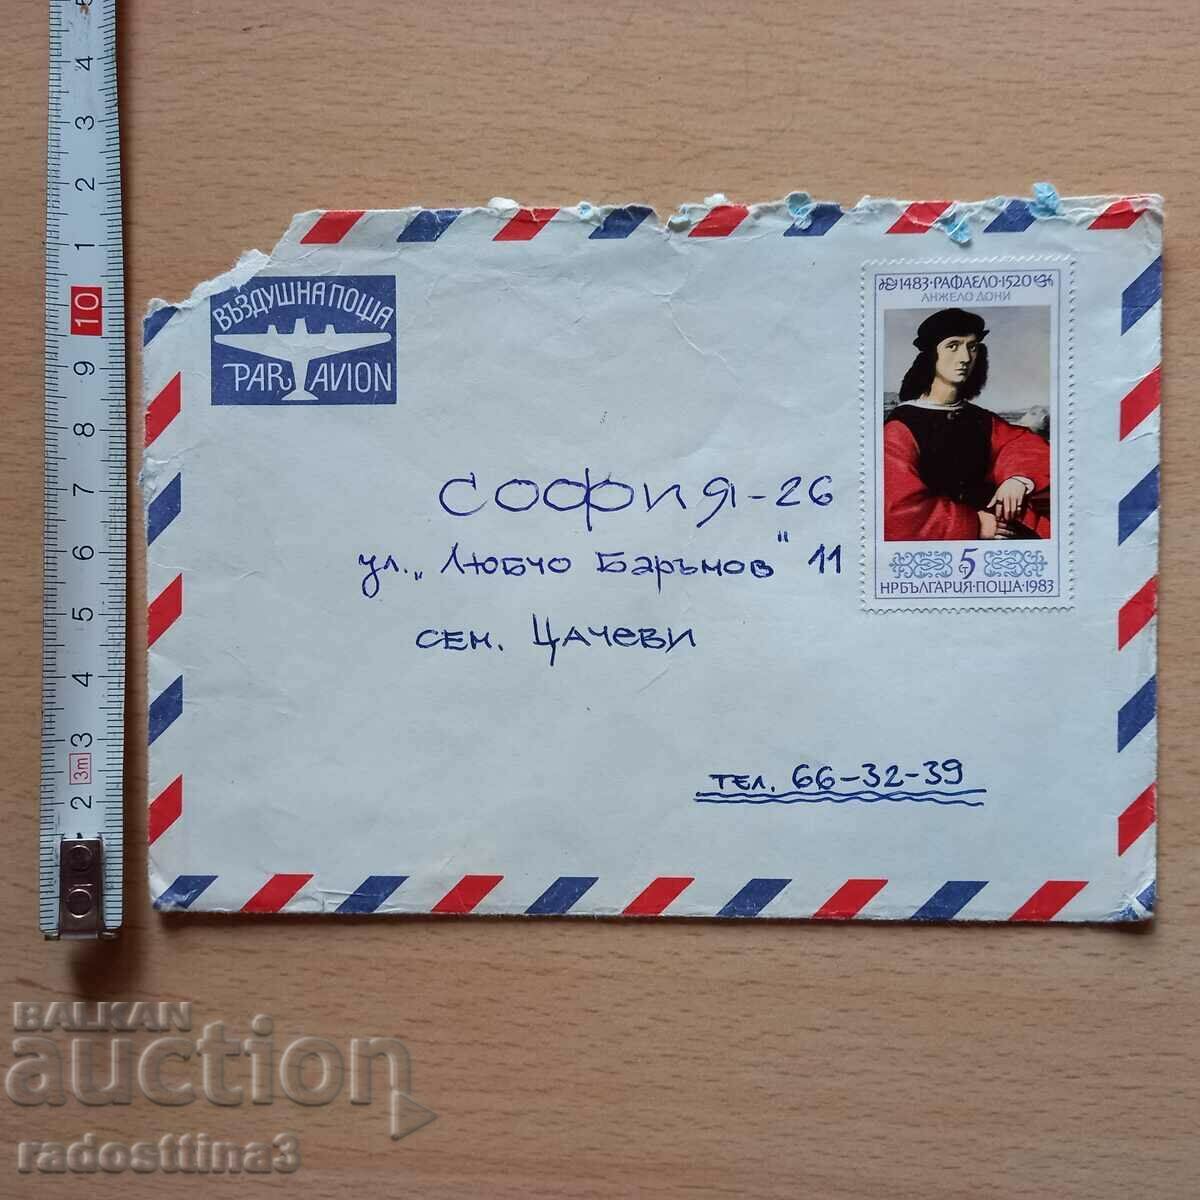 Plic postal cu marca Bulgaria